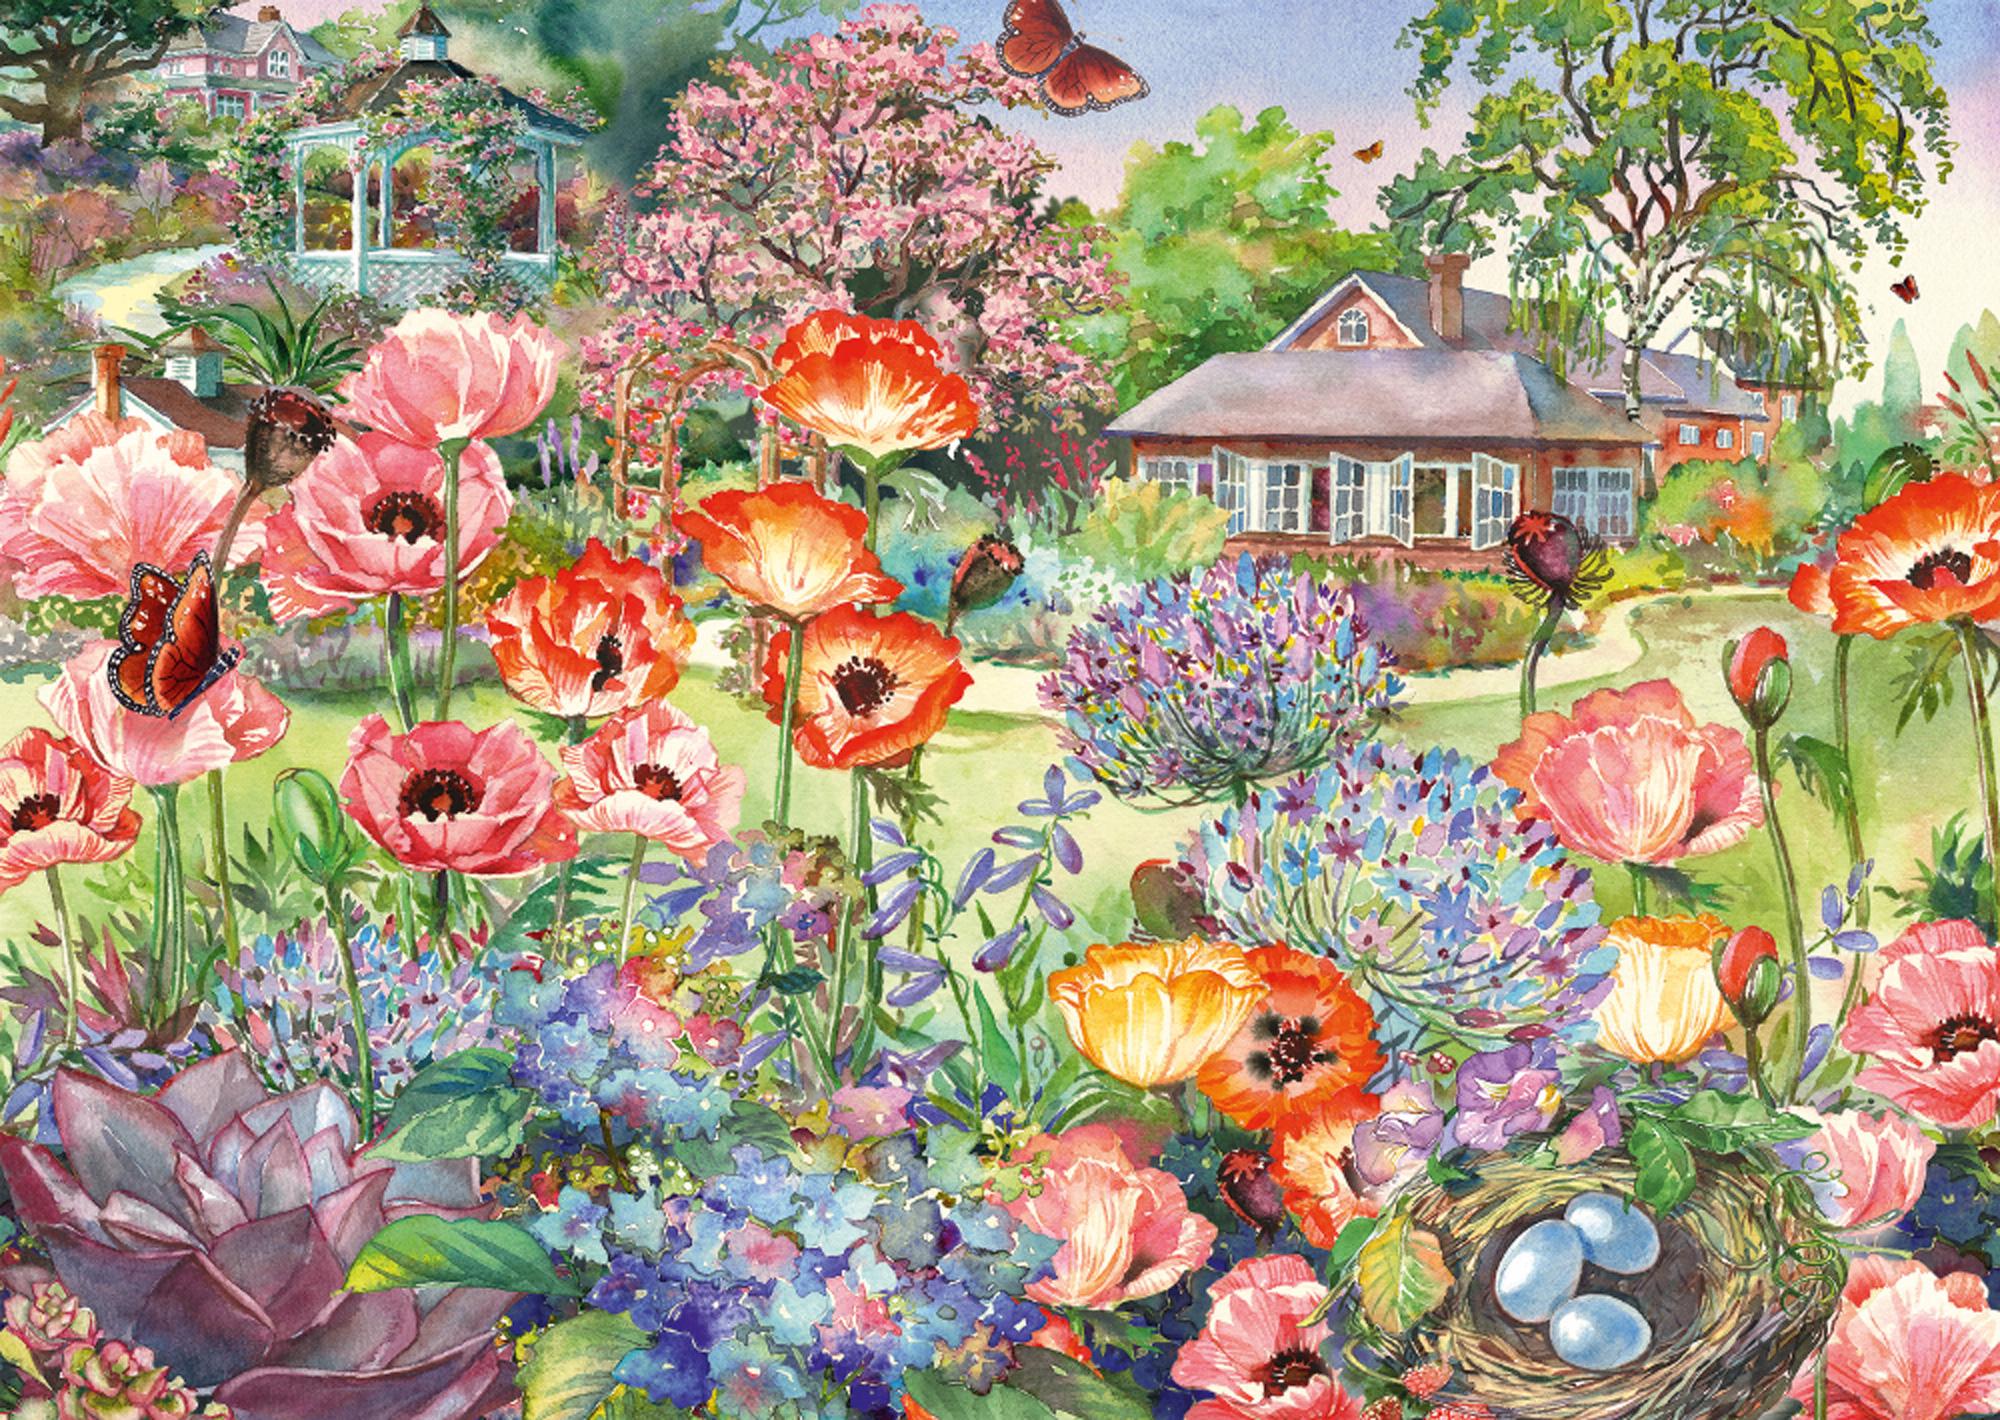 Puzzle Kvetoucí zahrada 1000